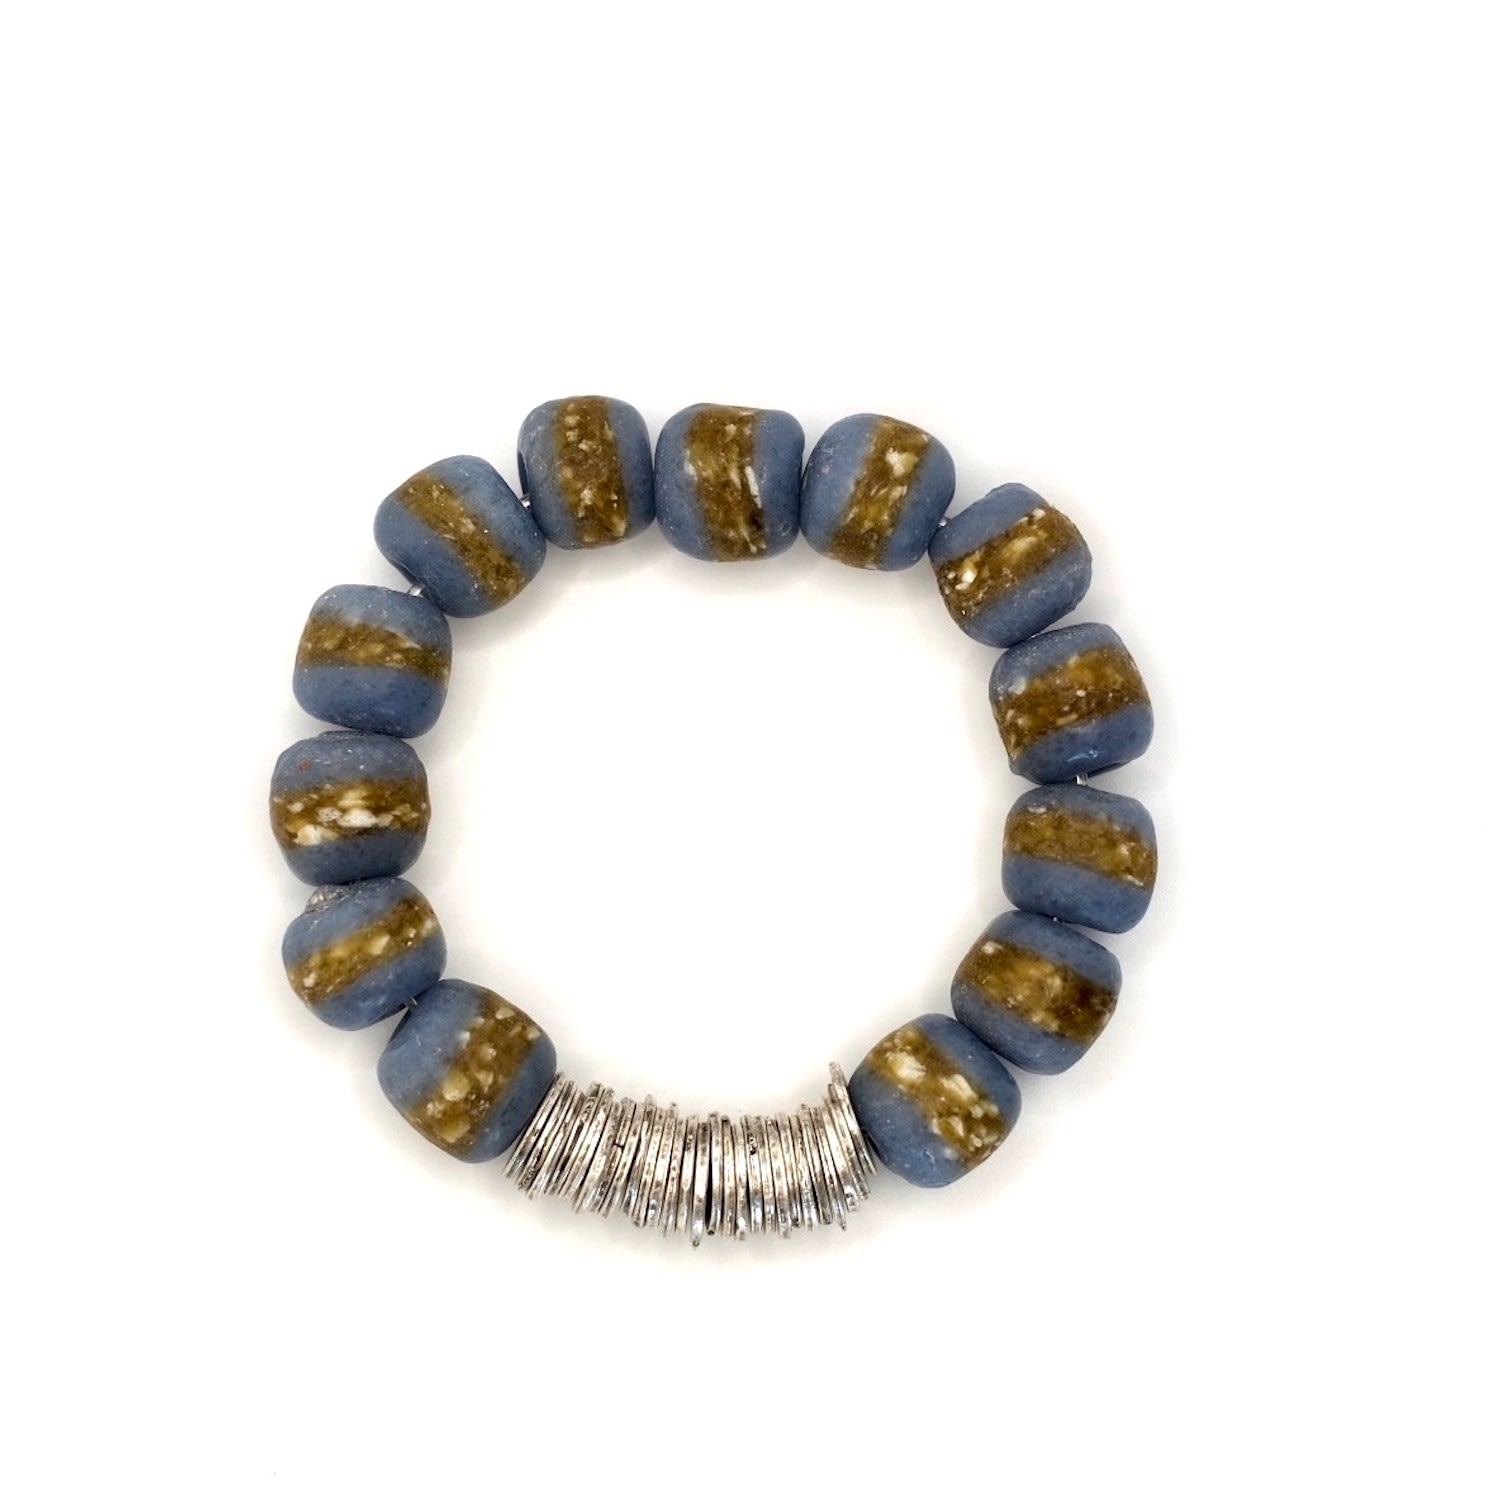 Women’s Krobo Beads Bracelets In Gray With Gold Spacers Binibeca Design